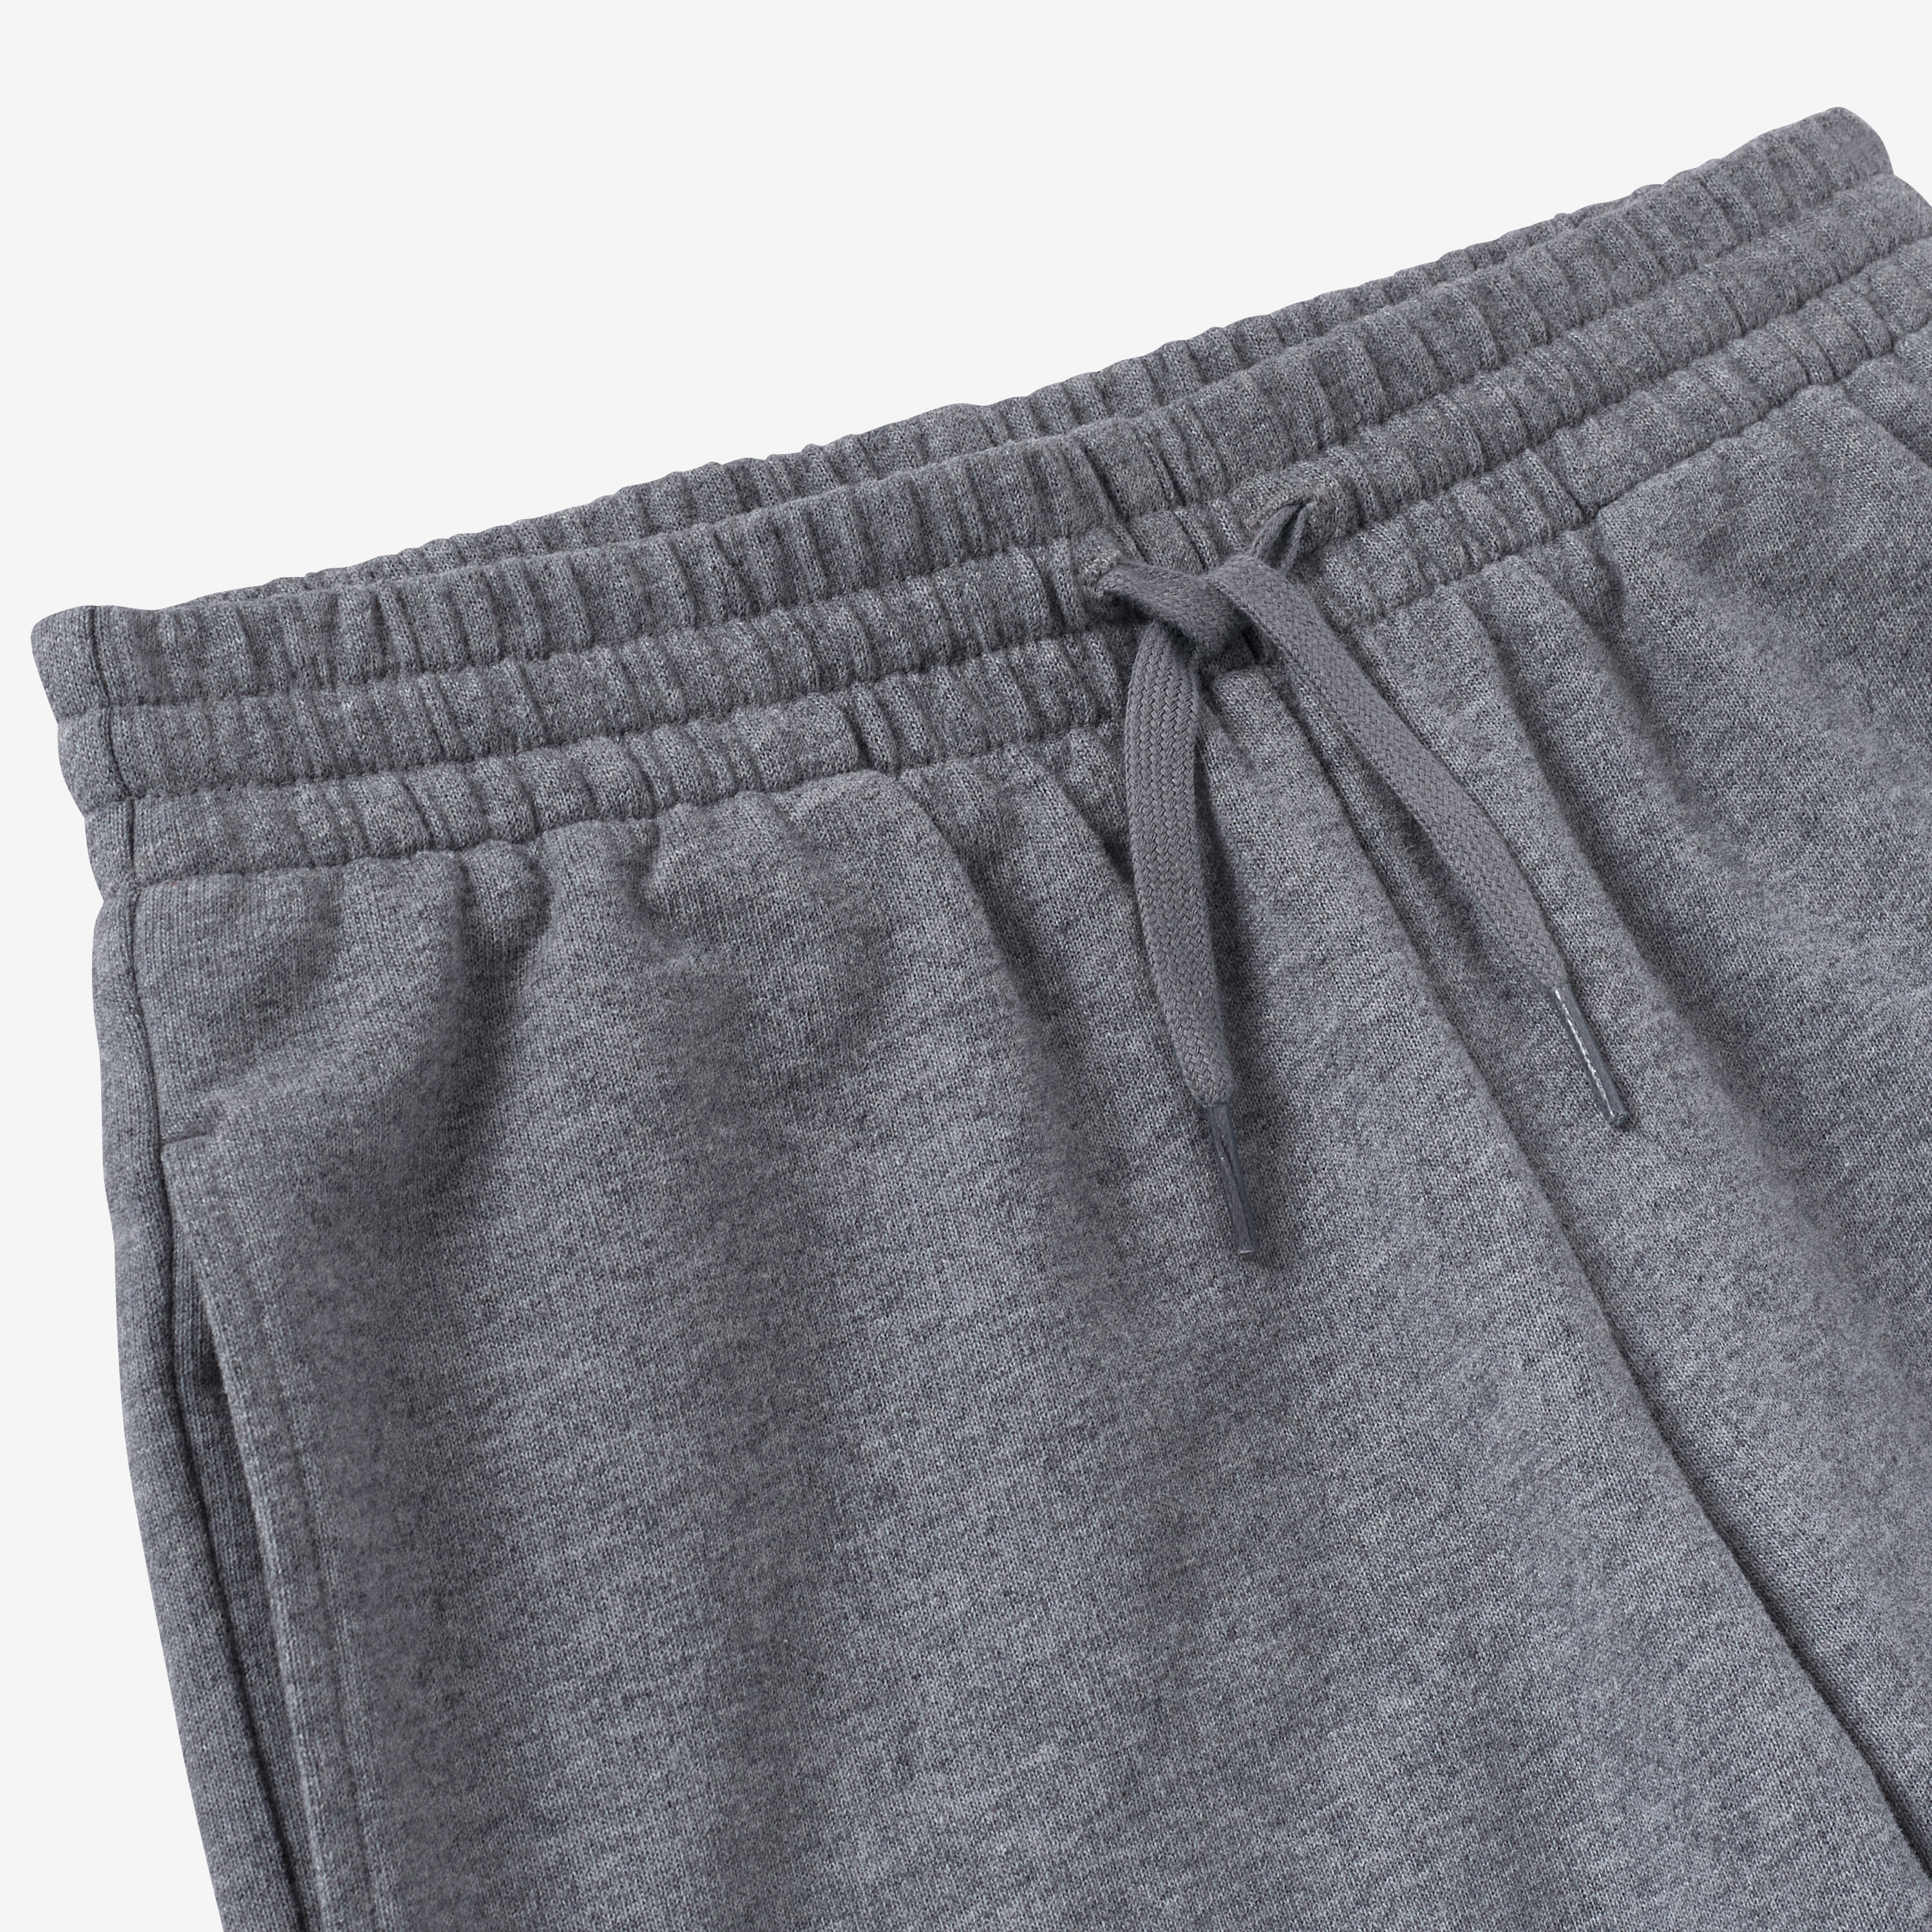 Kids' Unisex Cotton Shorts - Mottled Grey 4/7